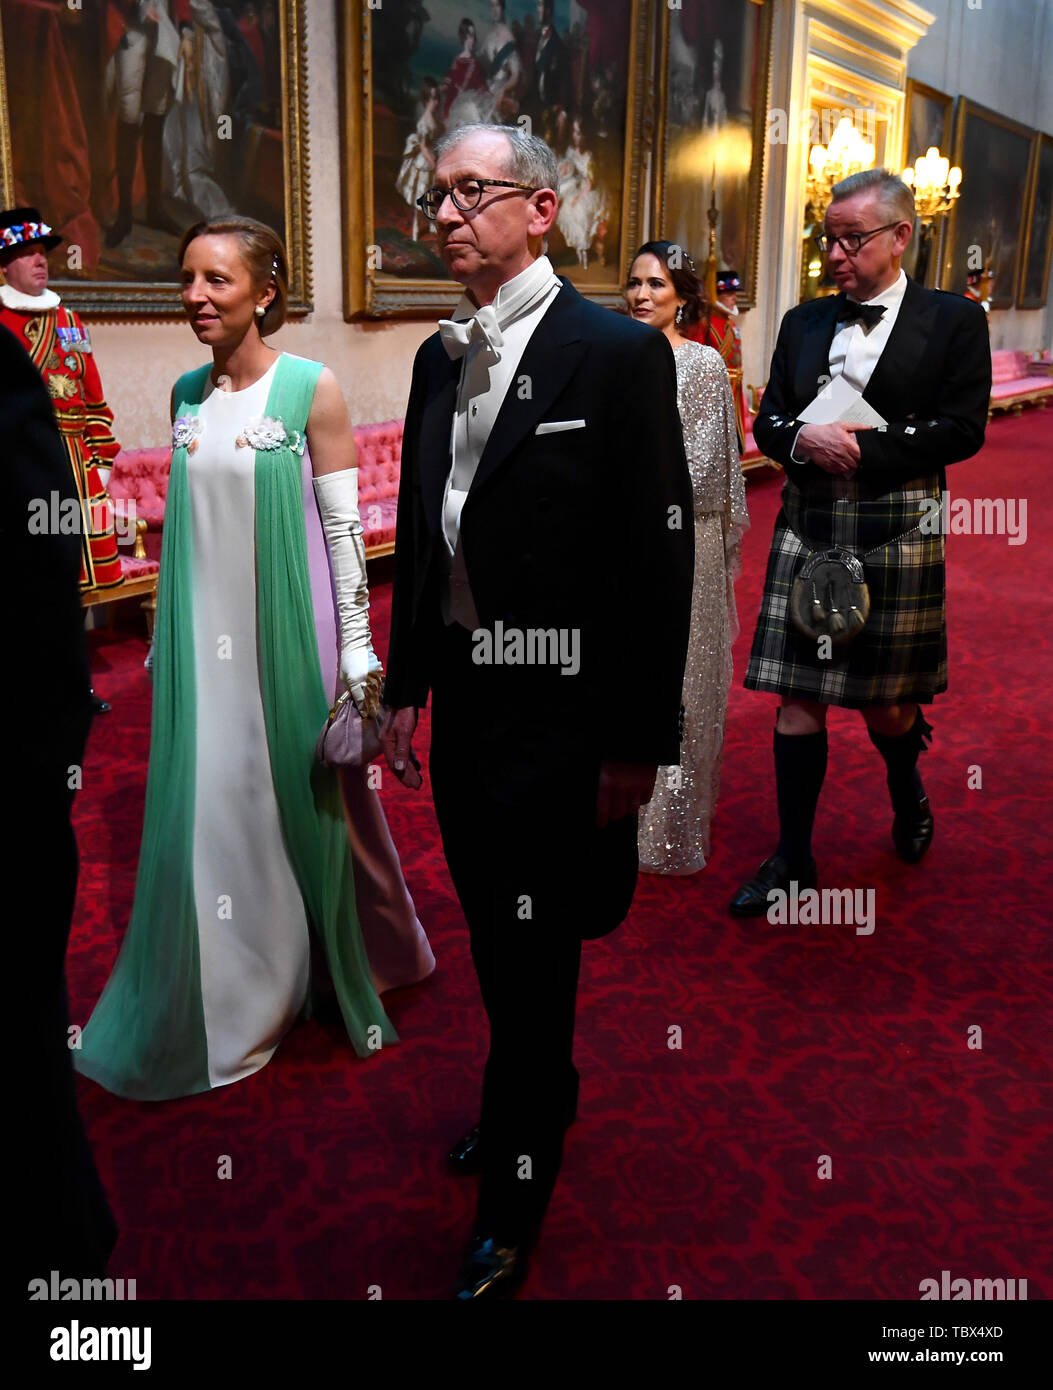 Lindsay Reynolds et le Premier Ministre Mari Philip peuvent arriver à travers la galerie est au cours de la banquet d'État au palais de Buckingham, à Londres, le premier jour de l'US President's trois jour visite d'état du Royaume-Uni. Banque D'Images